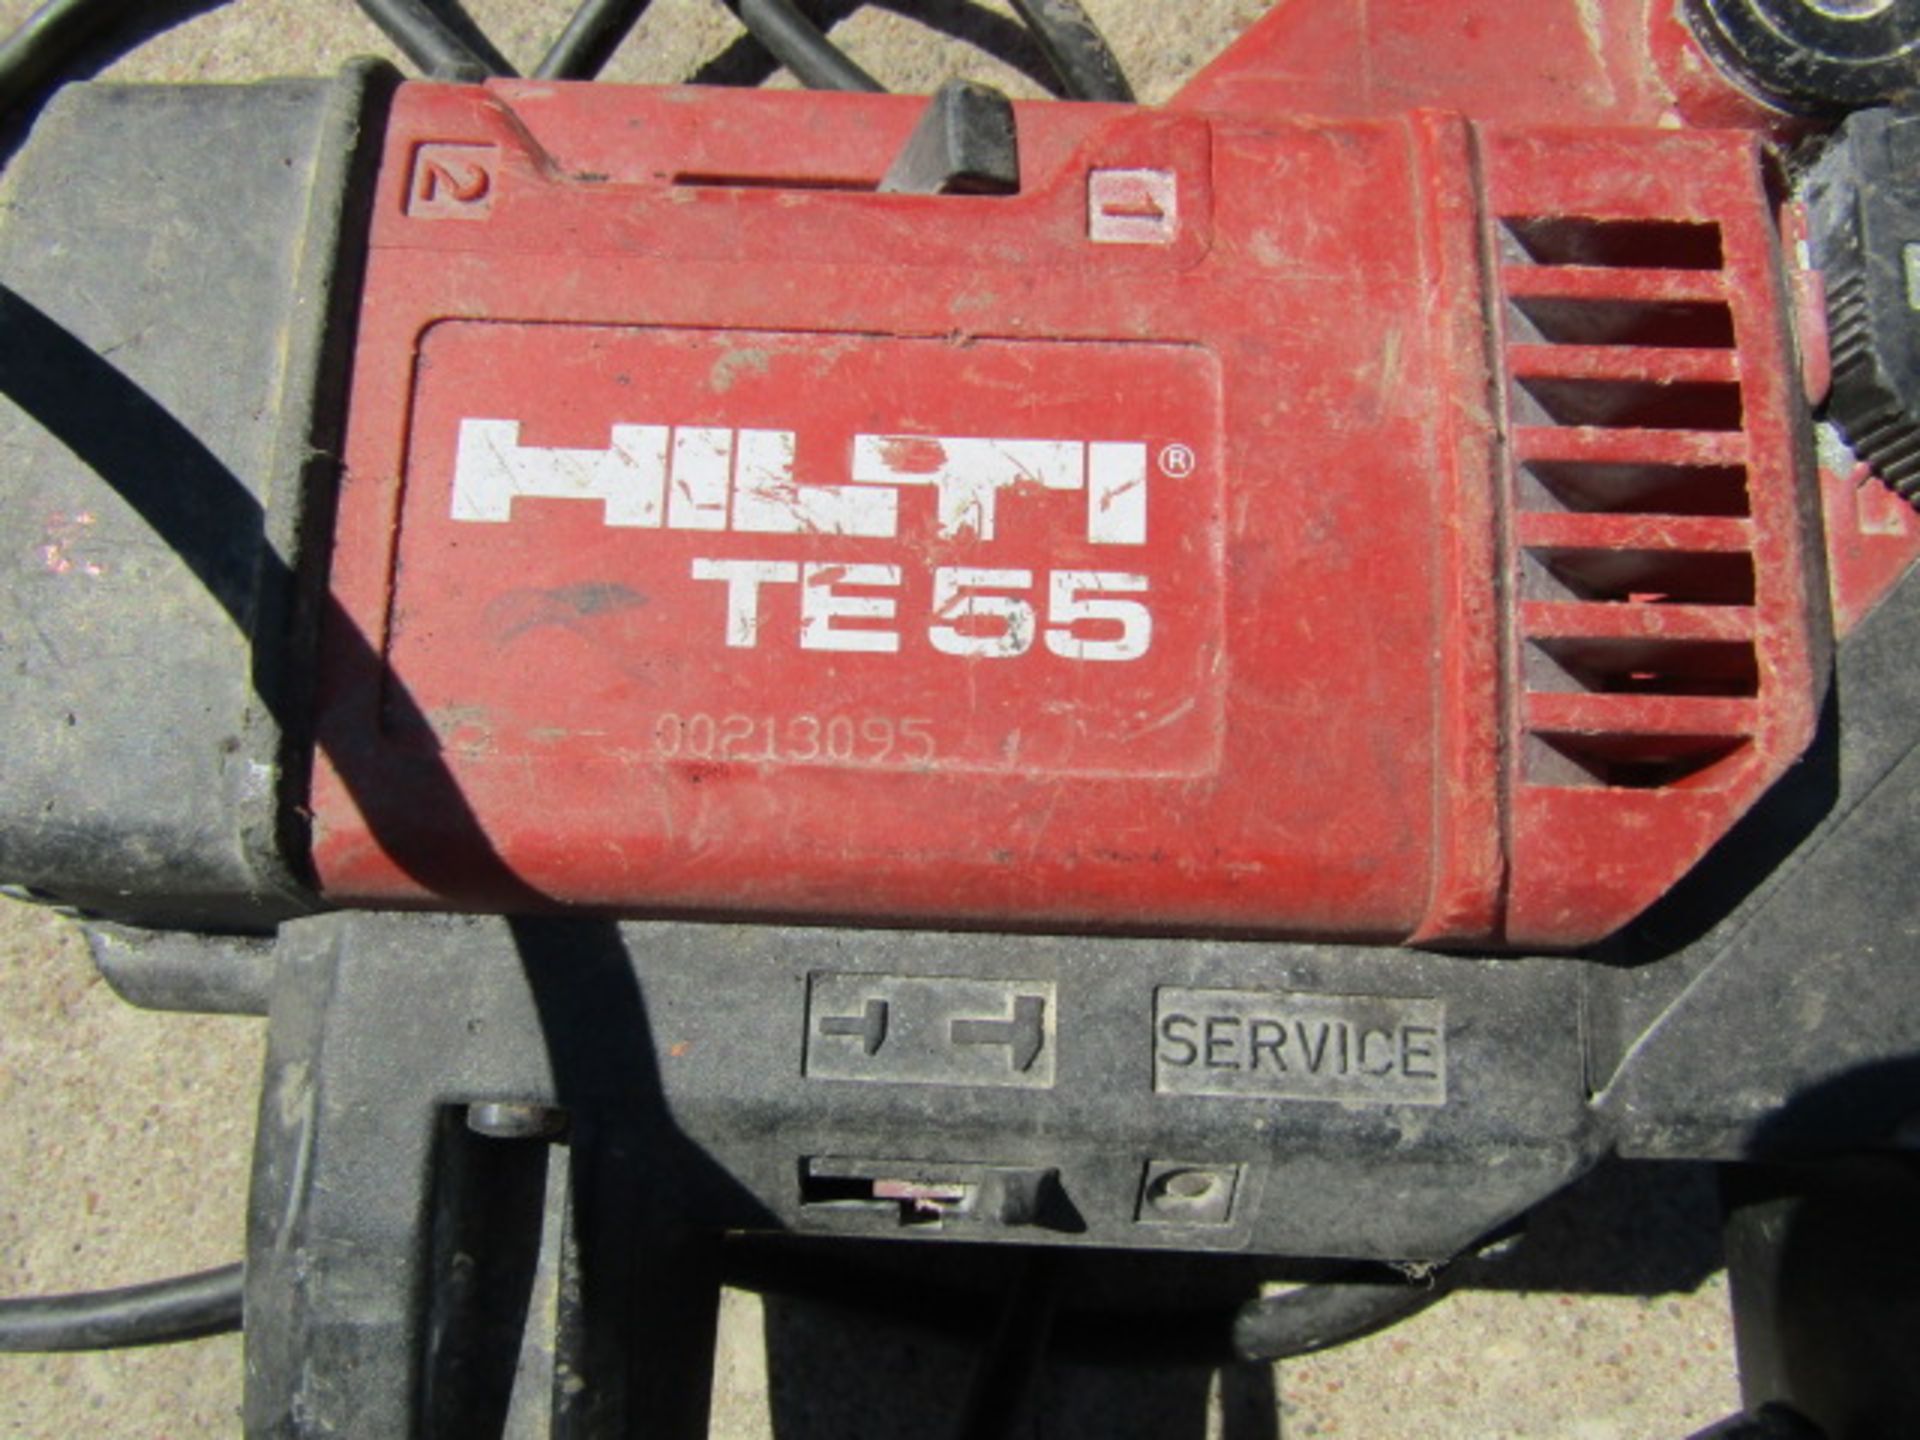 Hilti TE55 Hammer Drill, Located in Mt. Pleasant, IA - Image 2 of 2